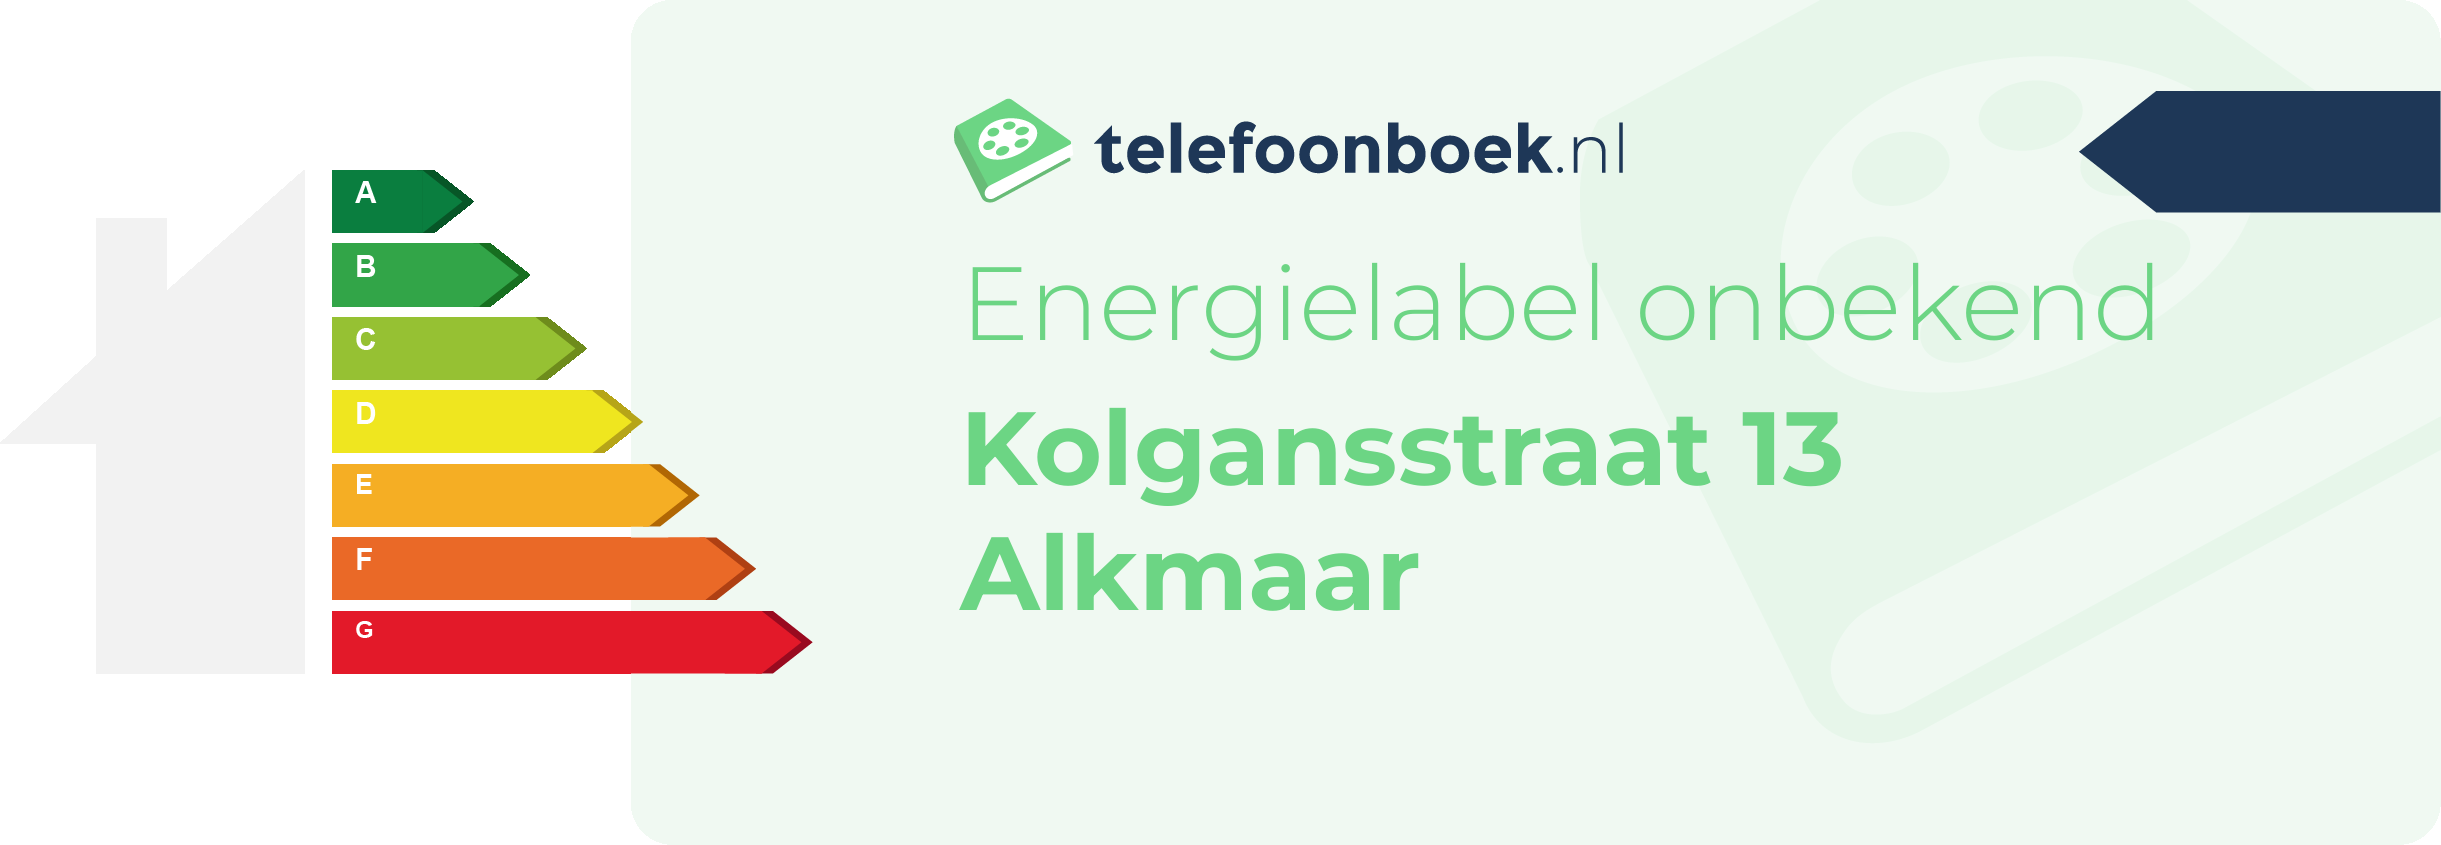 Energielabel Kolgansstraat 13 Alkmaar